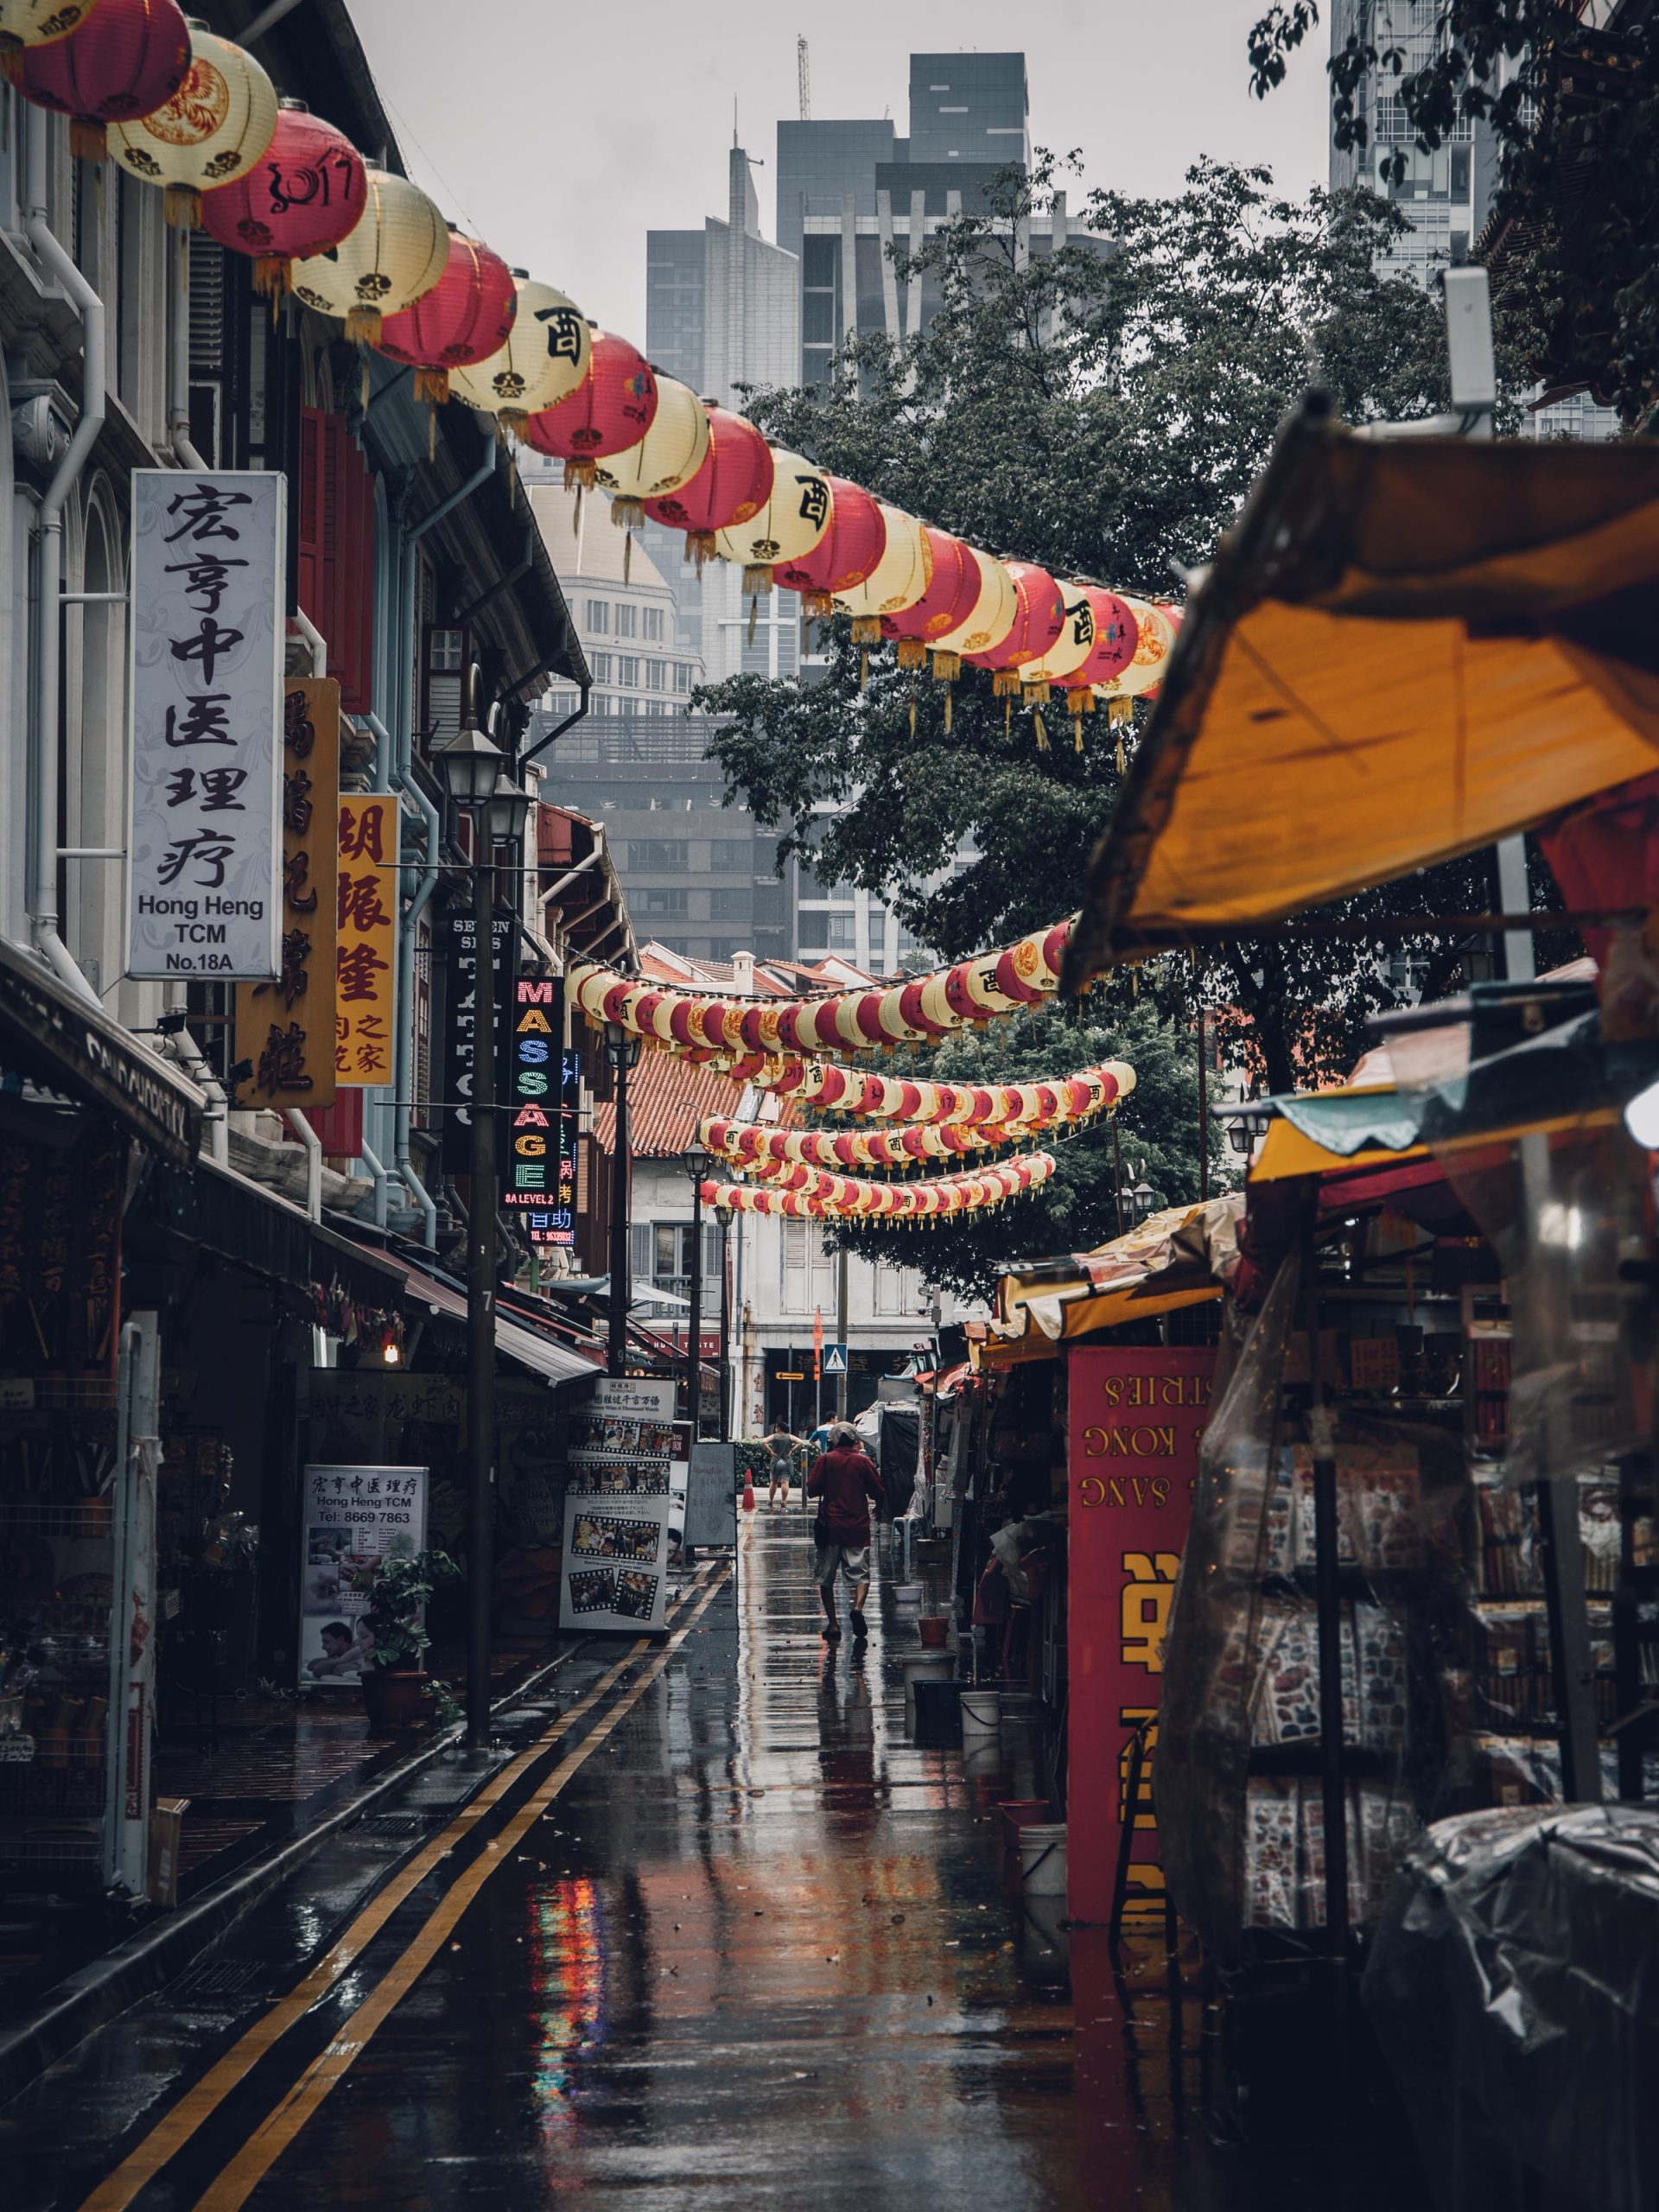 Chinatown is ook één van de must sees in Singapore